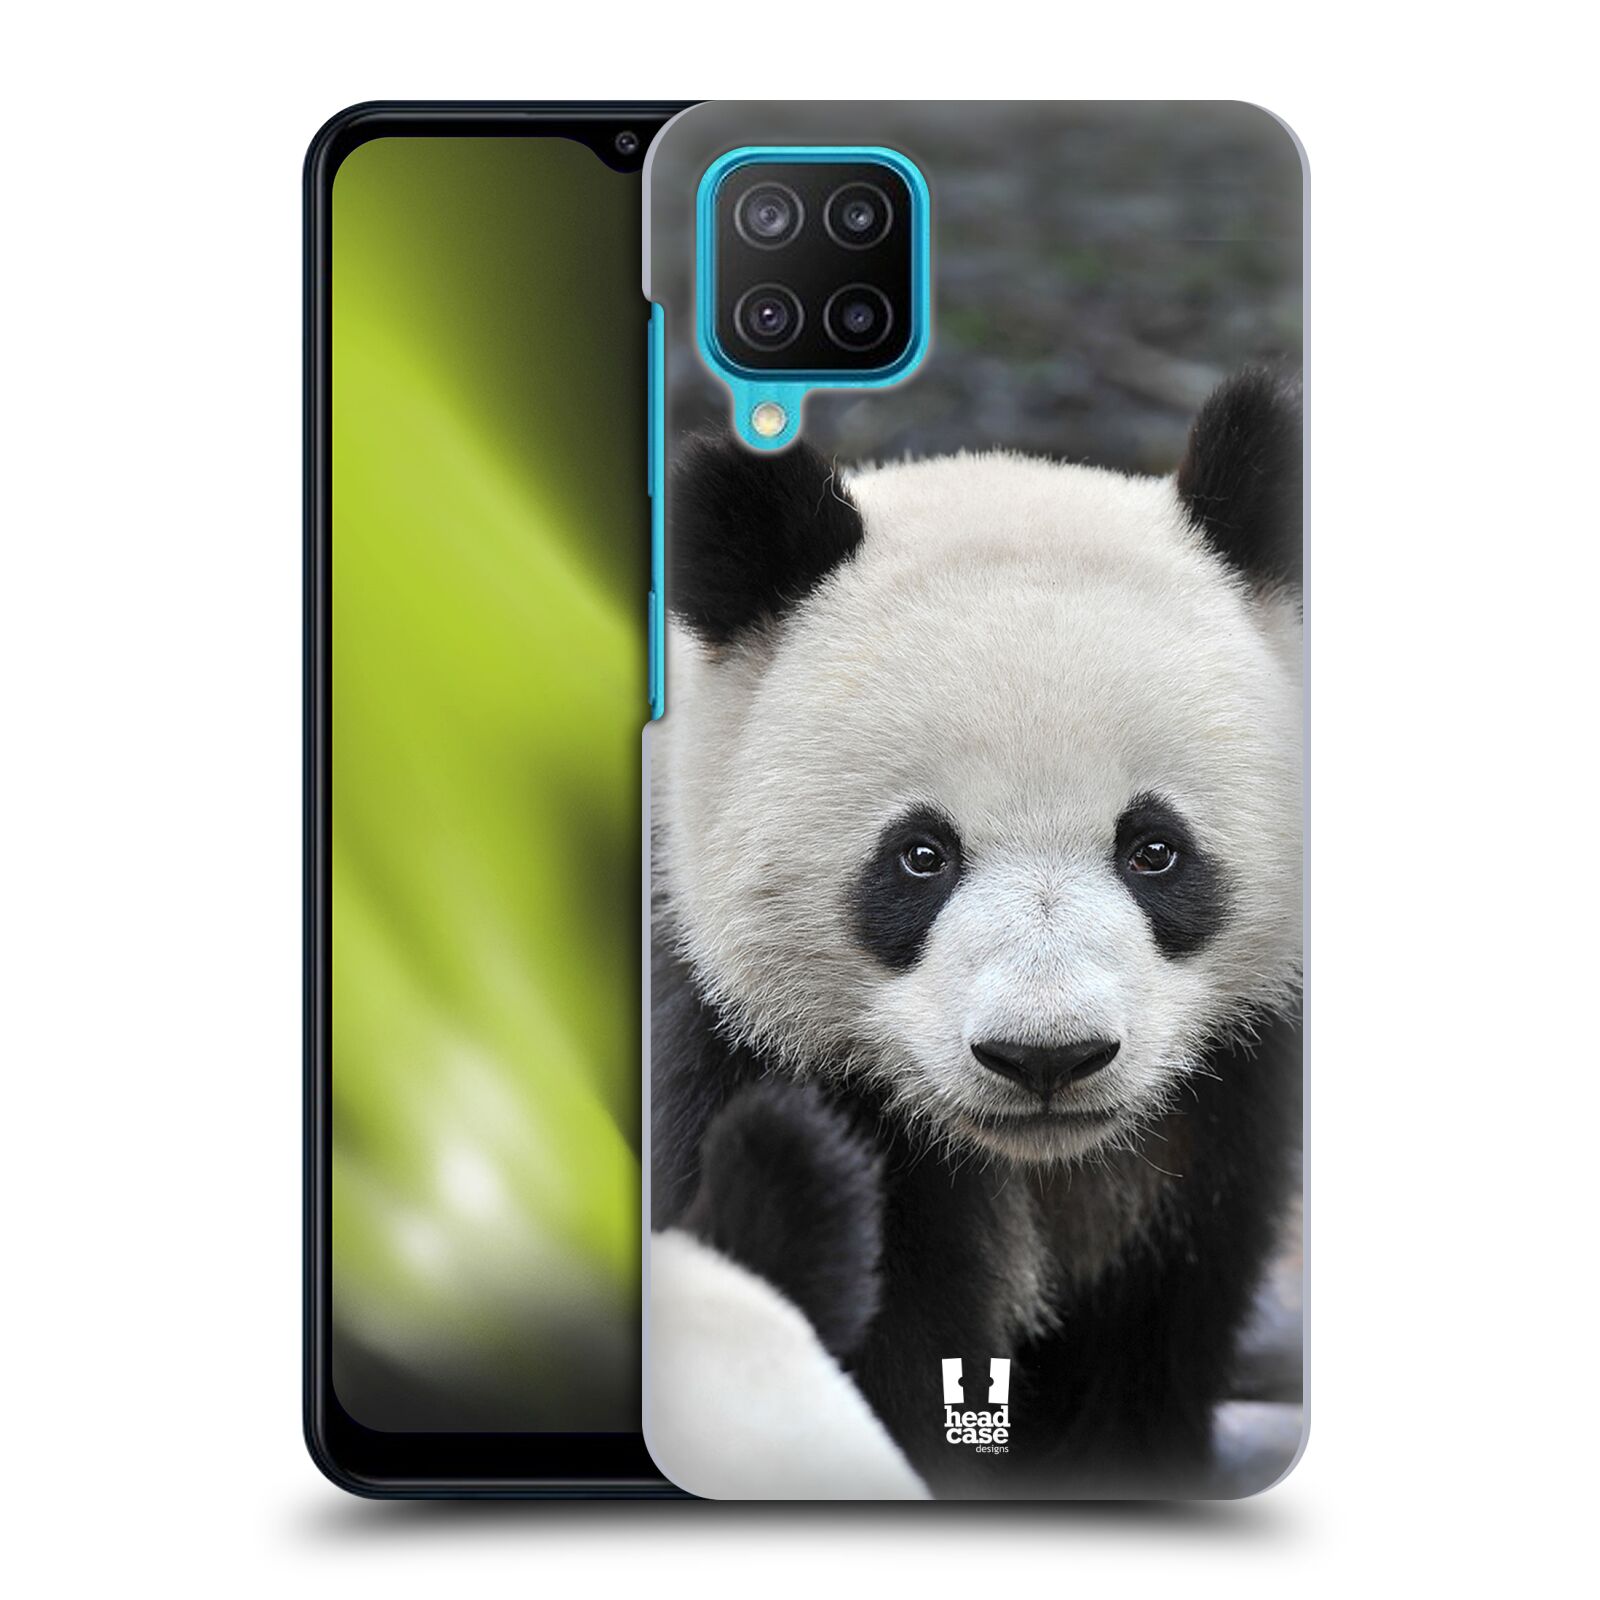 Zadní obal pro mobil Samsung Galaxy M12 - HEAD CASE - Svět zvířat medvěd panda